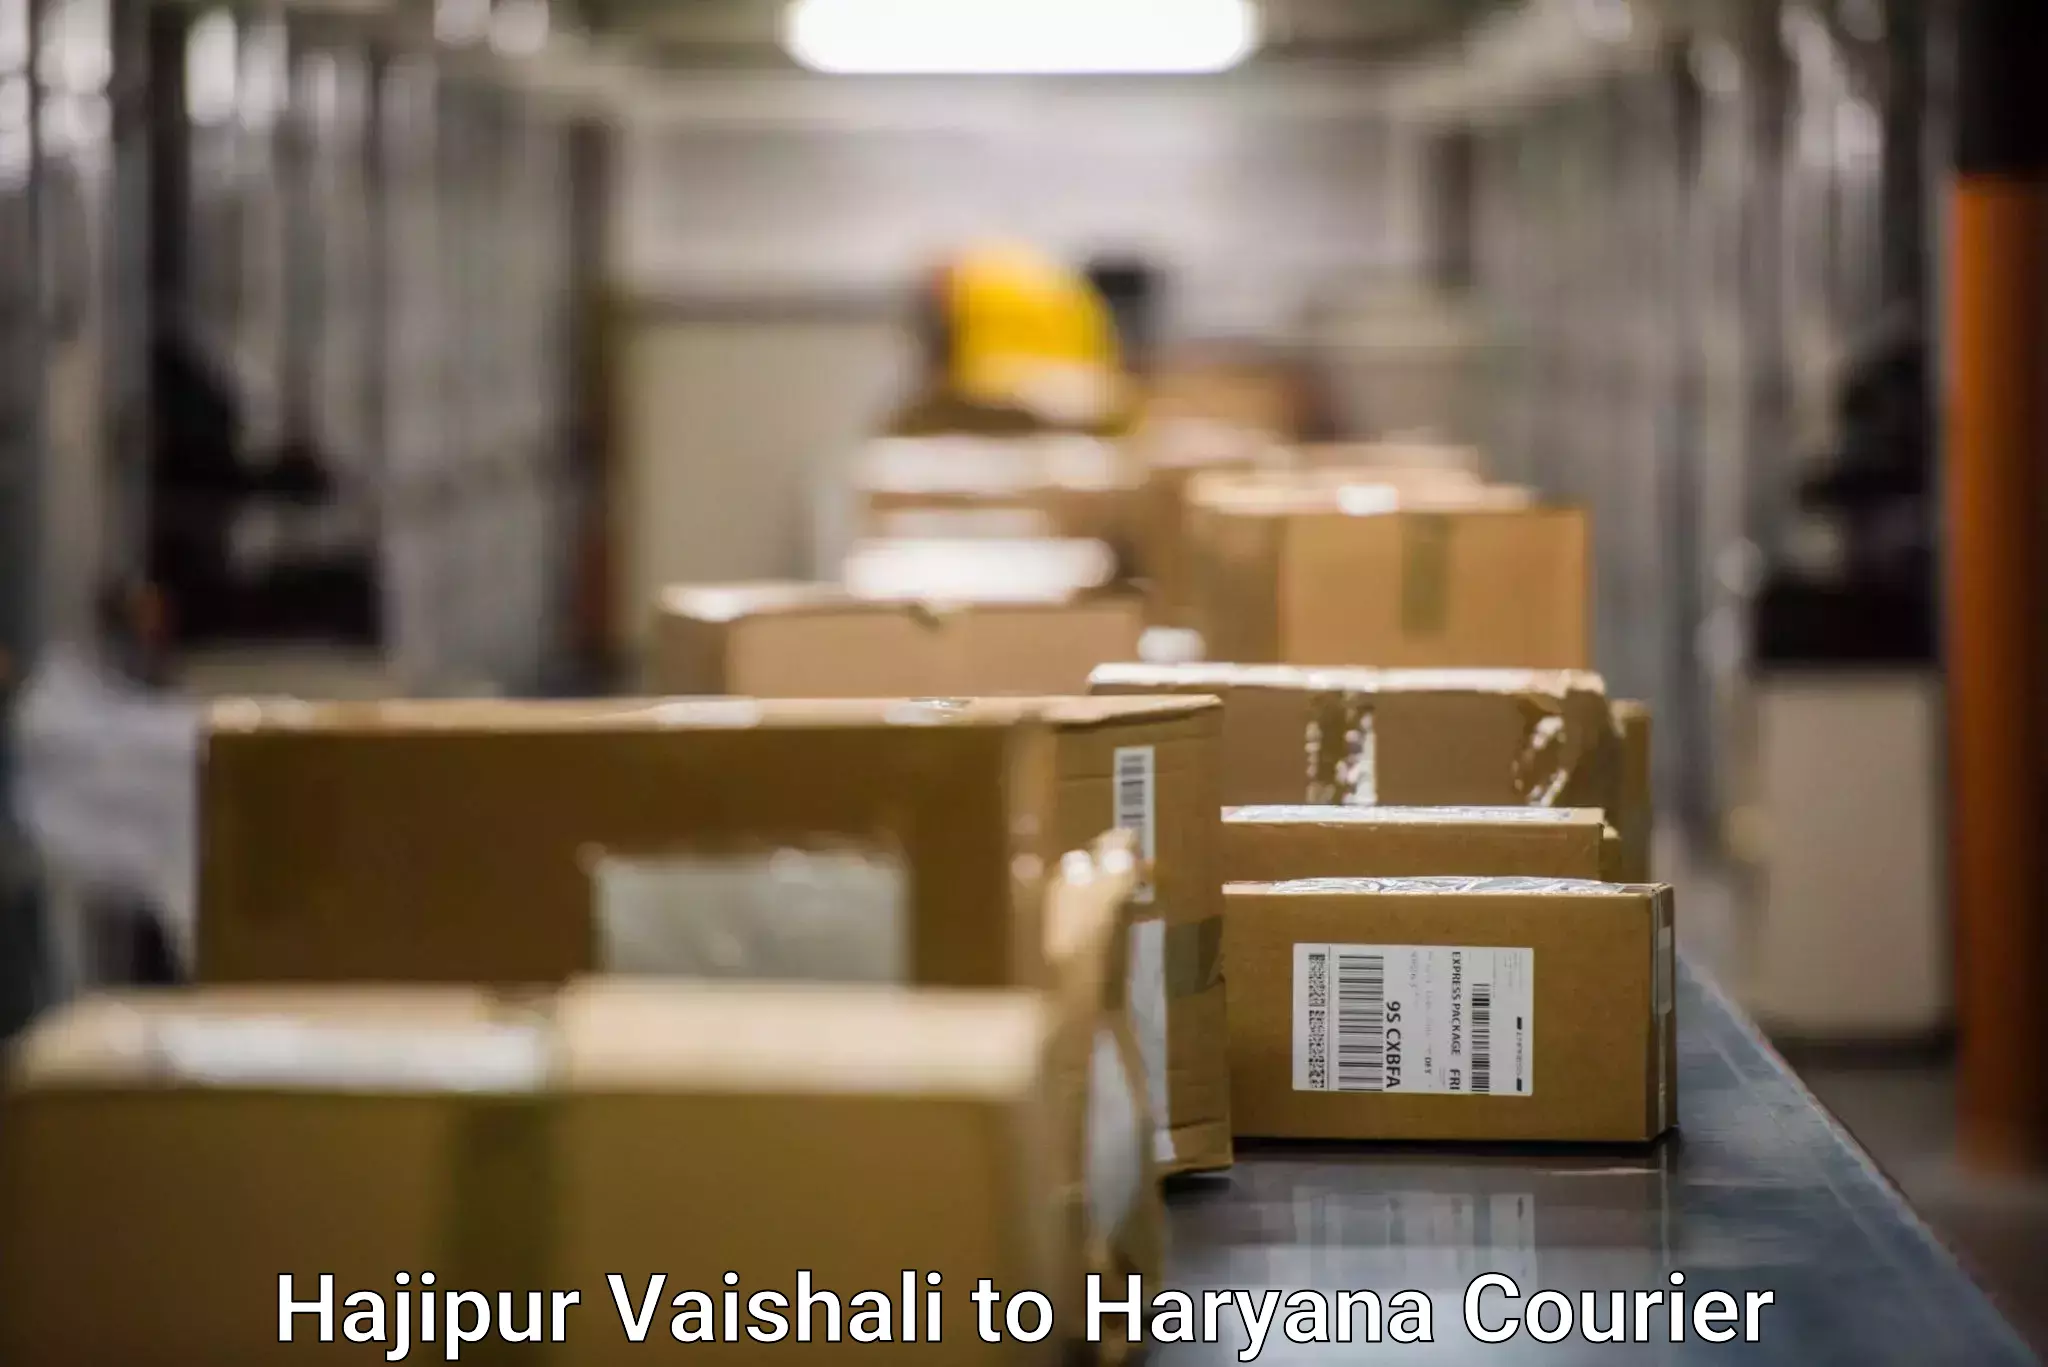 Enhanced shipping experience Hajipur Vaishali to Jhajjar